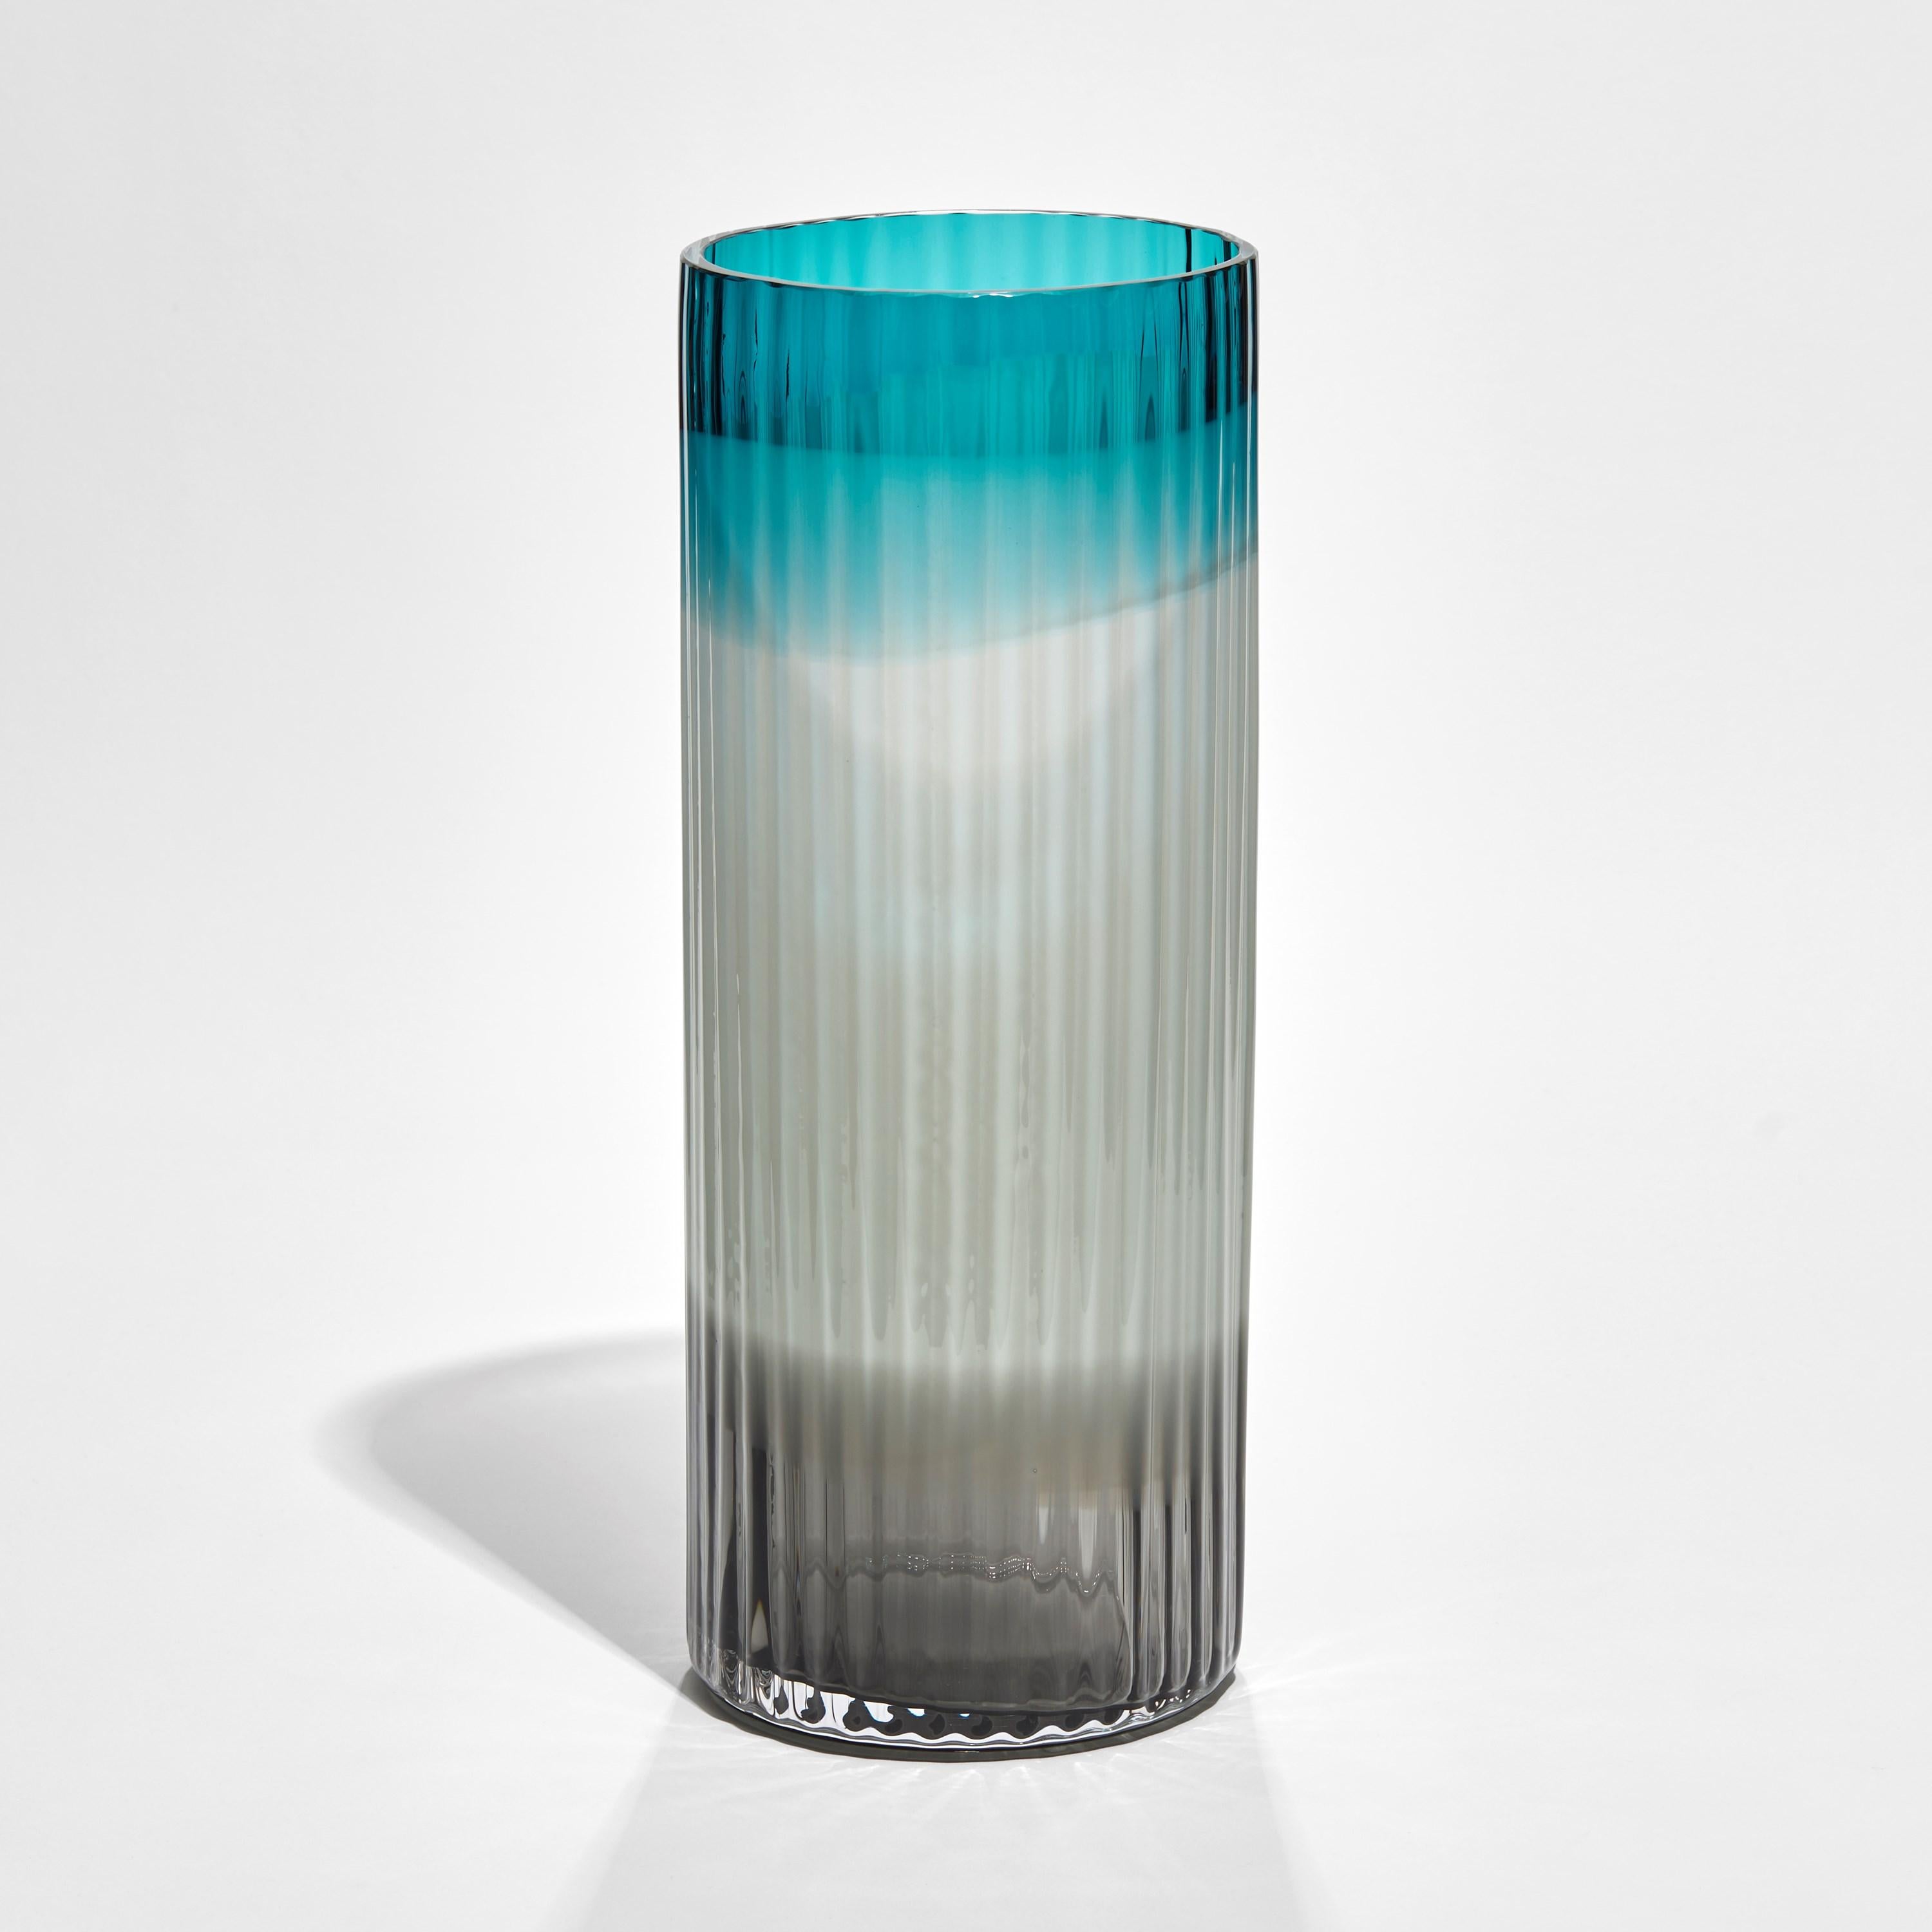 Le vase Plissé en turquoise, bleu clair et noir est une édition limitée du vase de l'artiste et designer suédoise Lena Bergström.

Créée à l'occasion de 